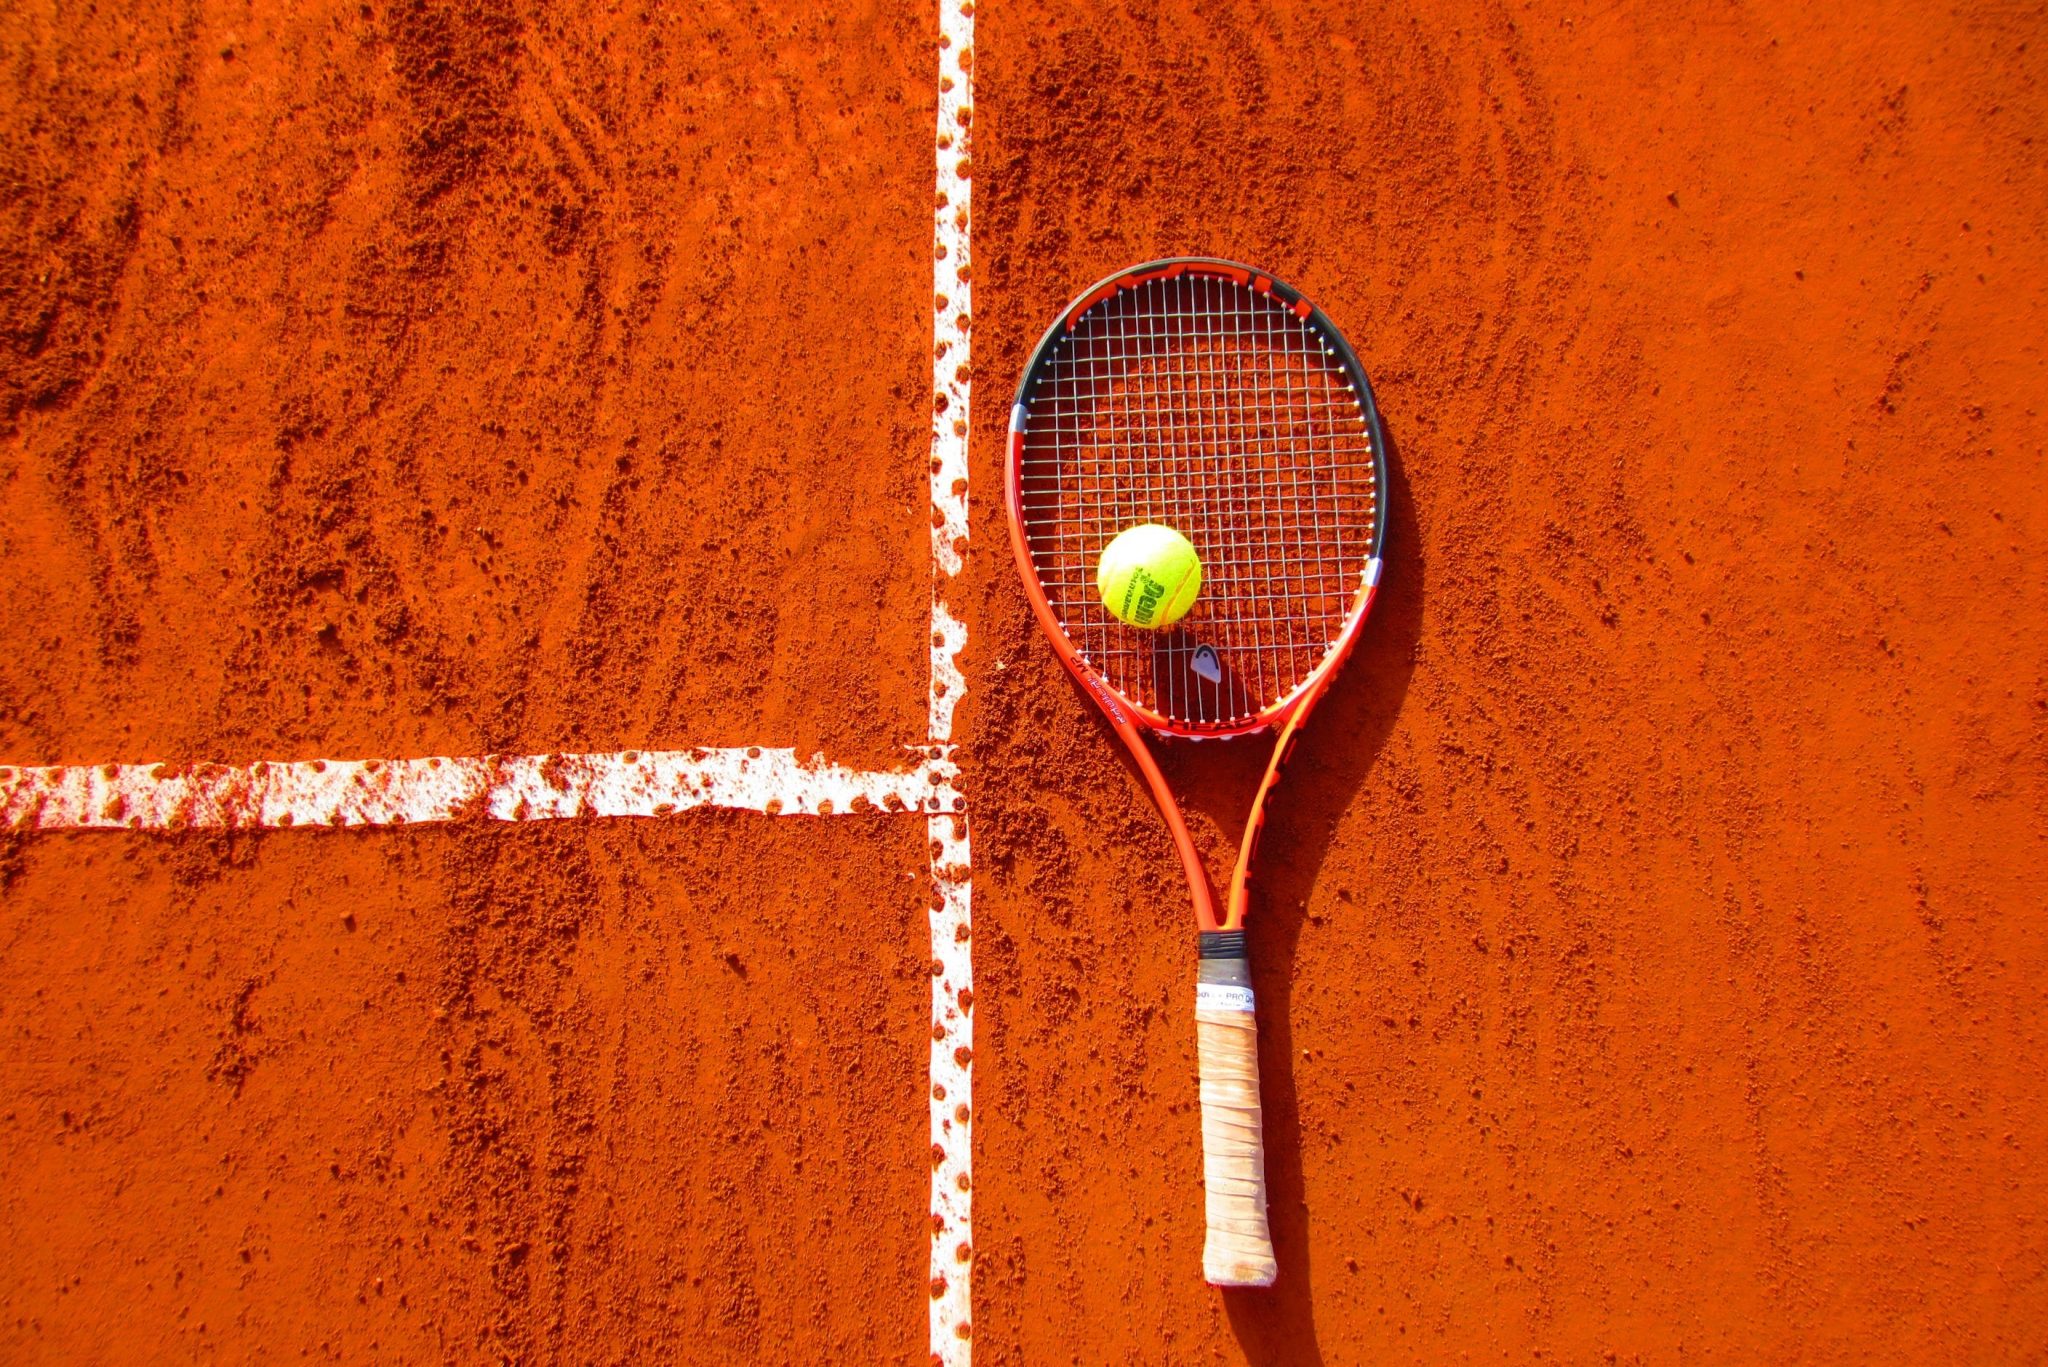 Léčba tenisového lokte: Co vám pomůže a kam se obrátit